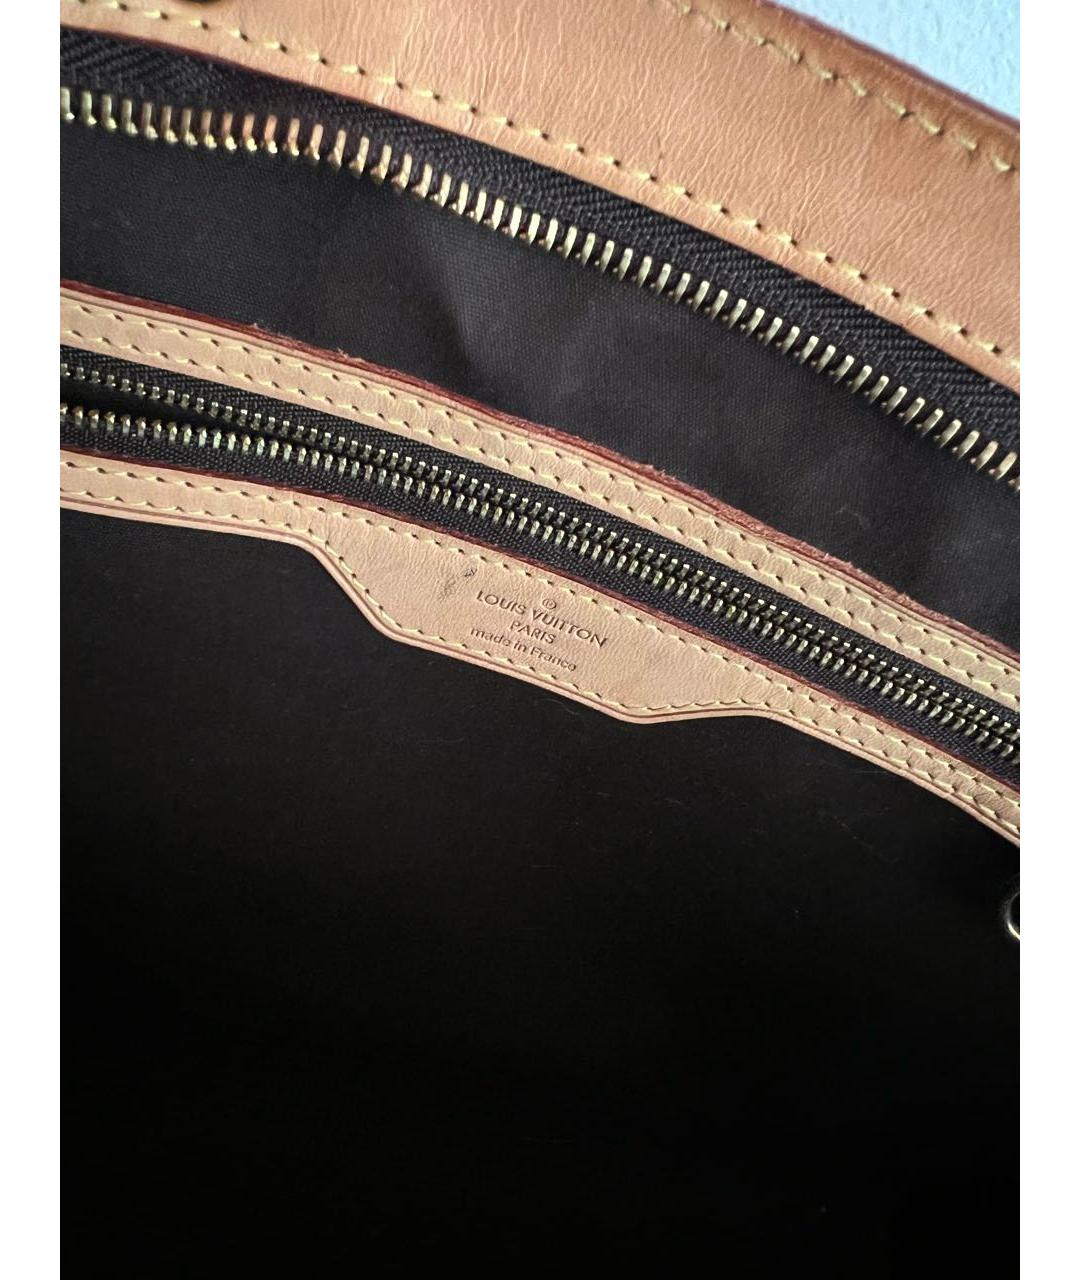 LOUIS VUITTON PRE-OWNED Бордовая сумка с короткими ручками из лакированной кожи, фото 6